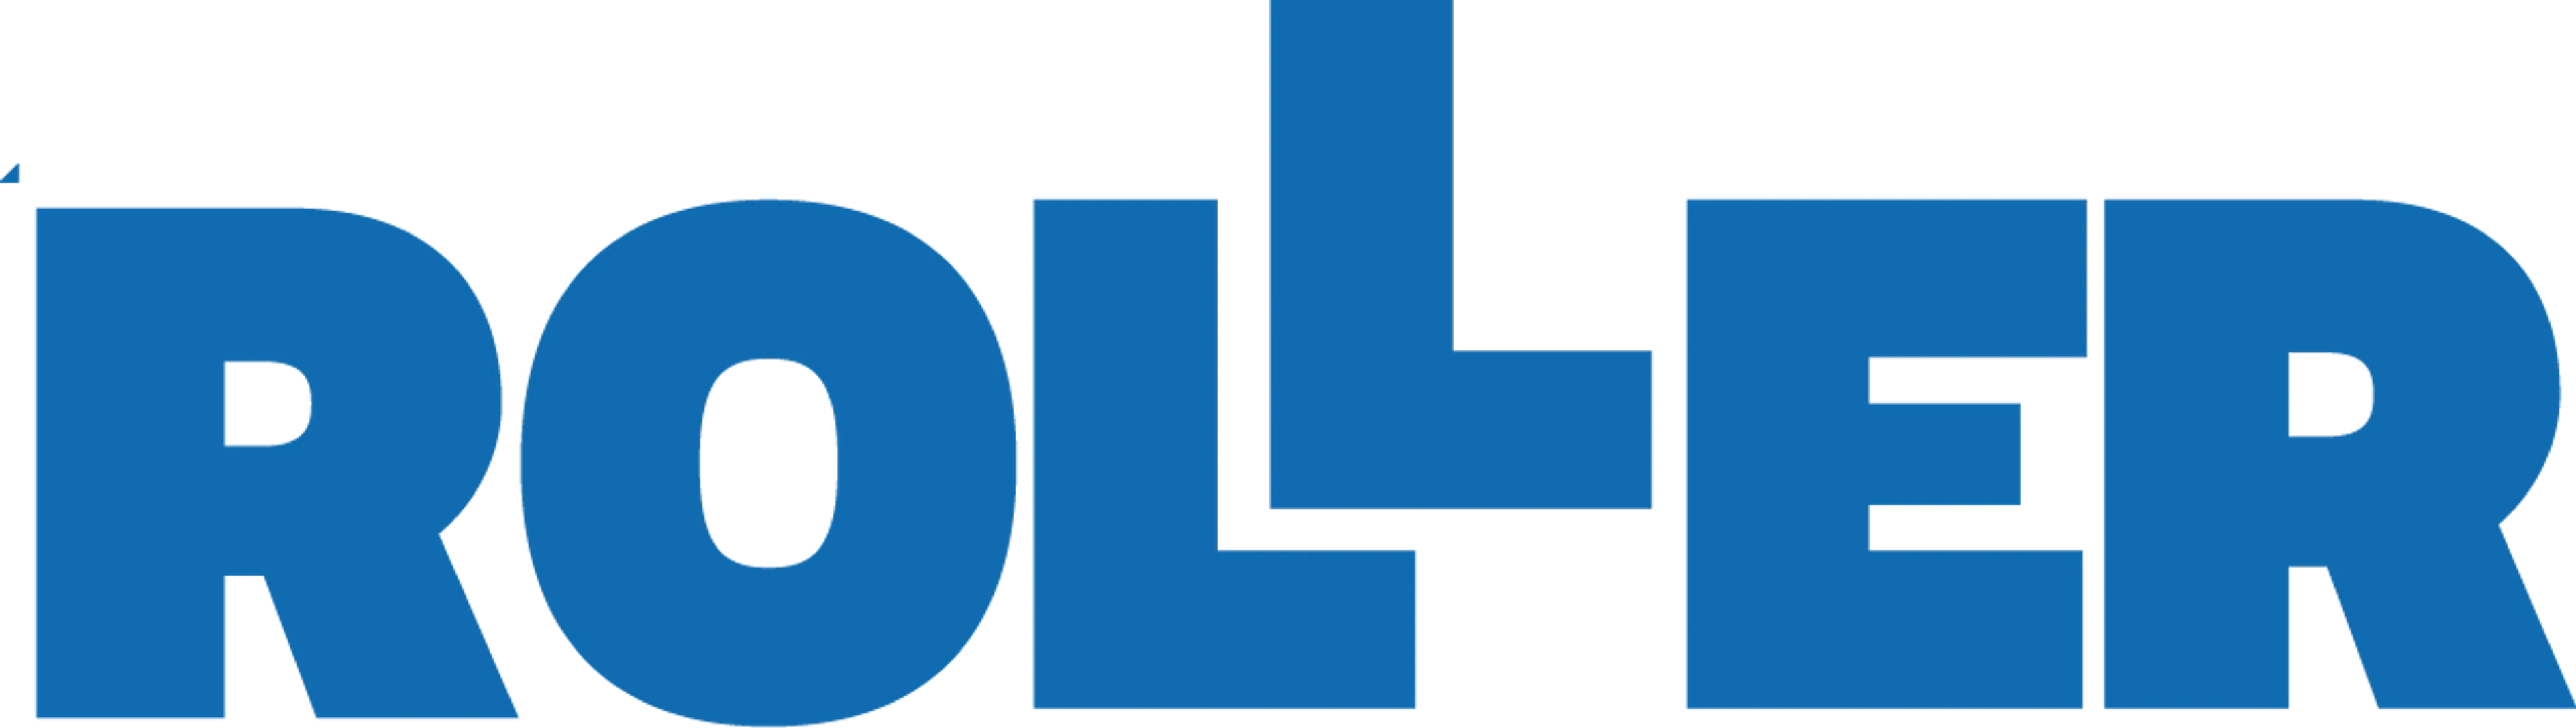 ROLLER logo